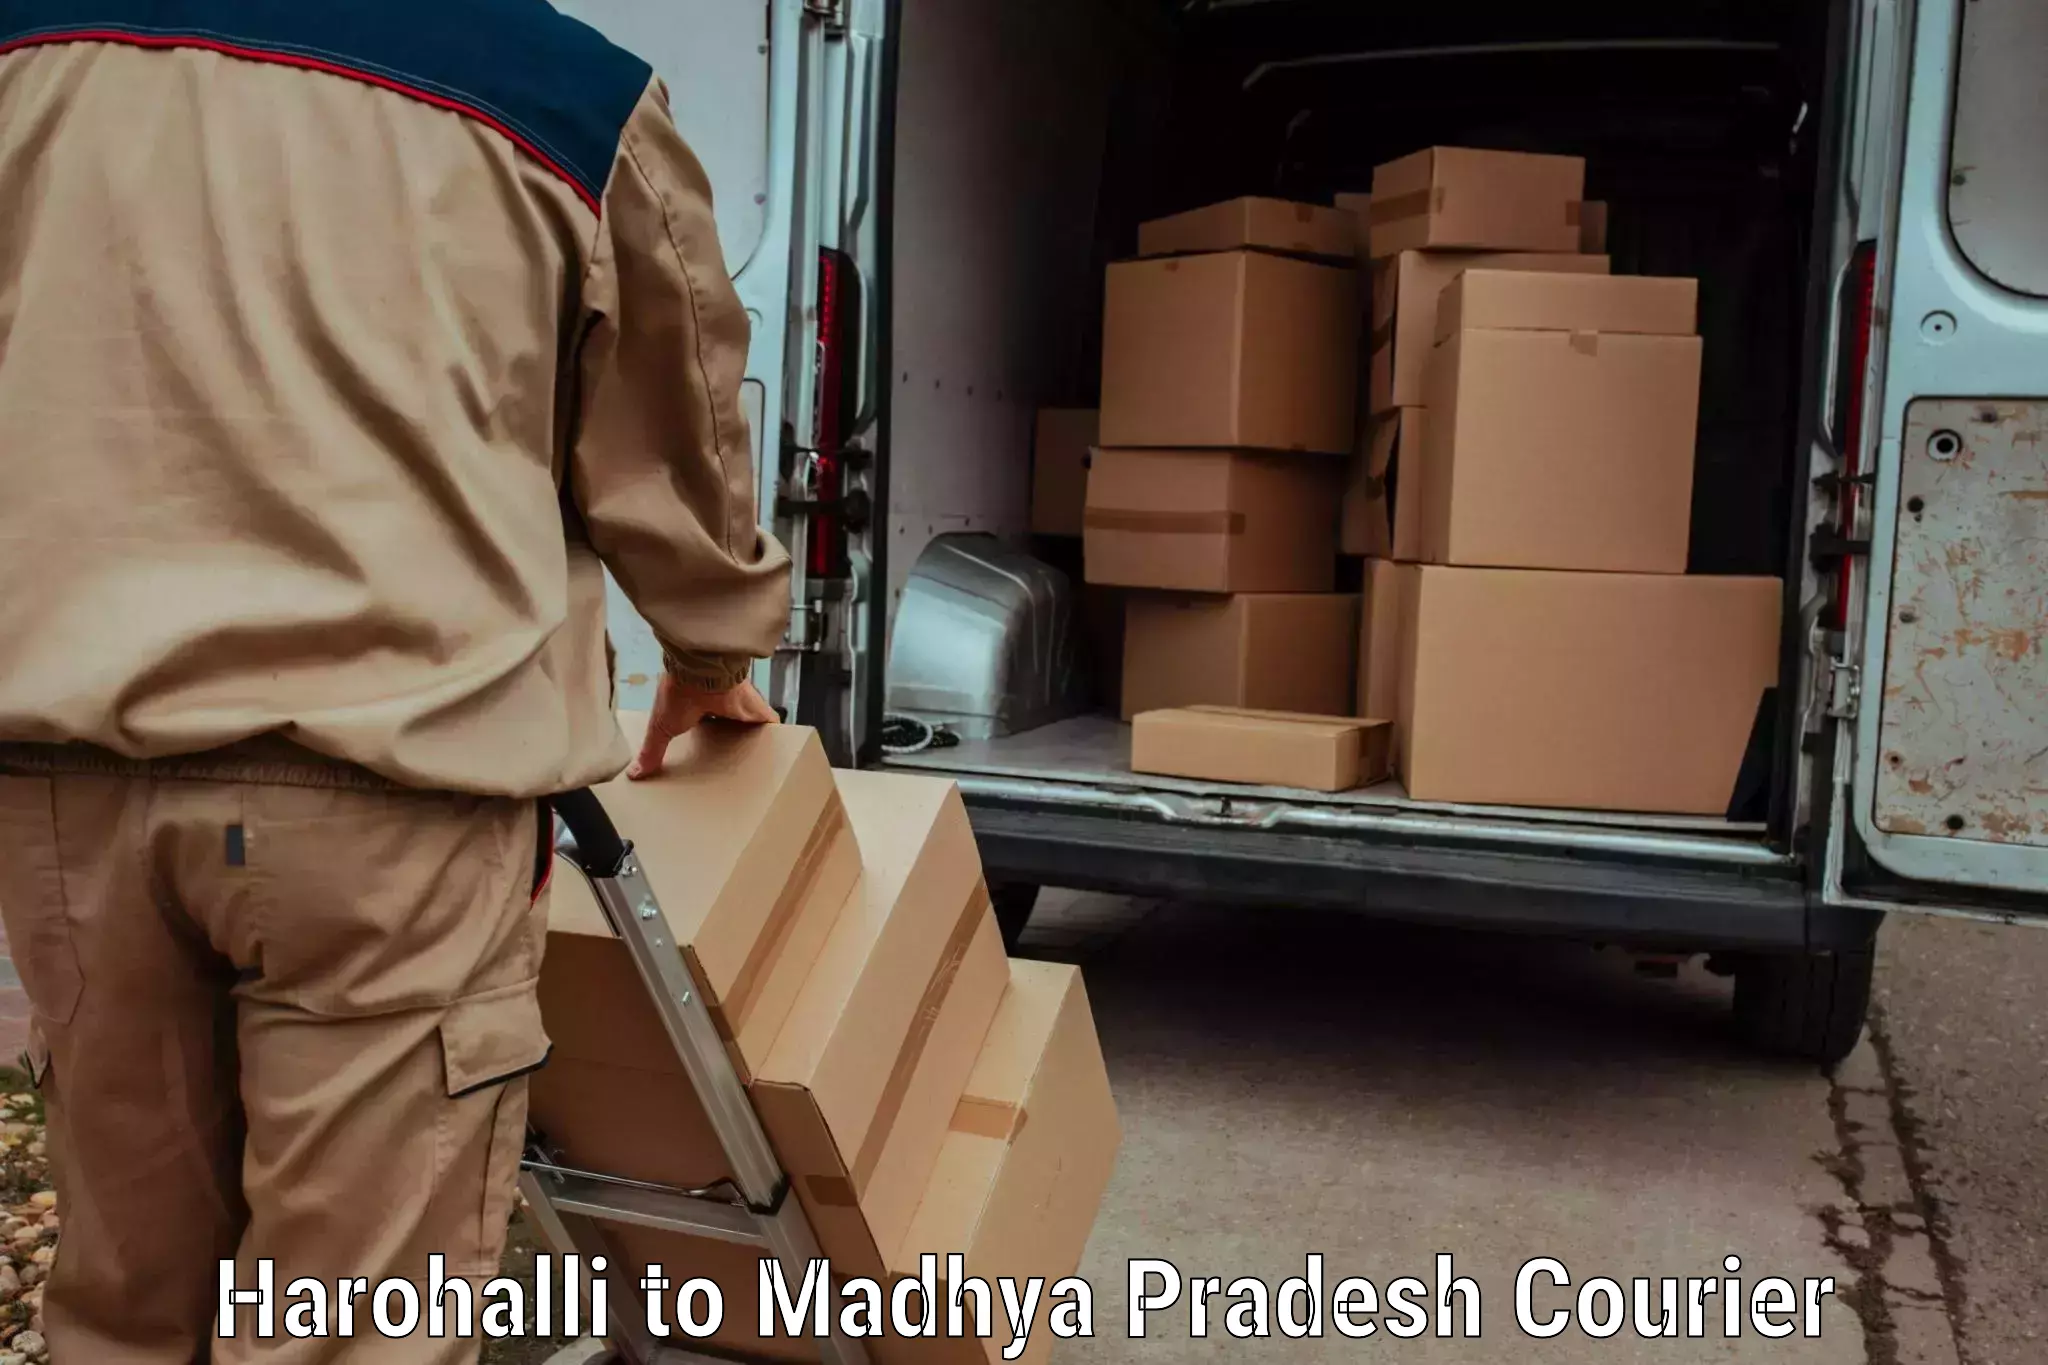 24-hour courier service Harohalli to Dewas